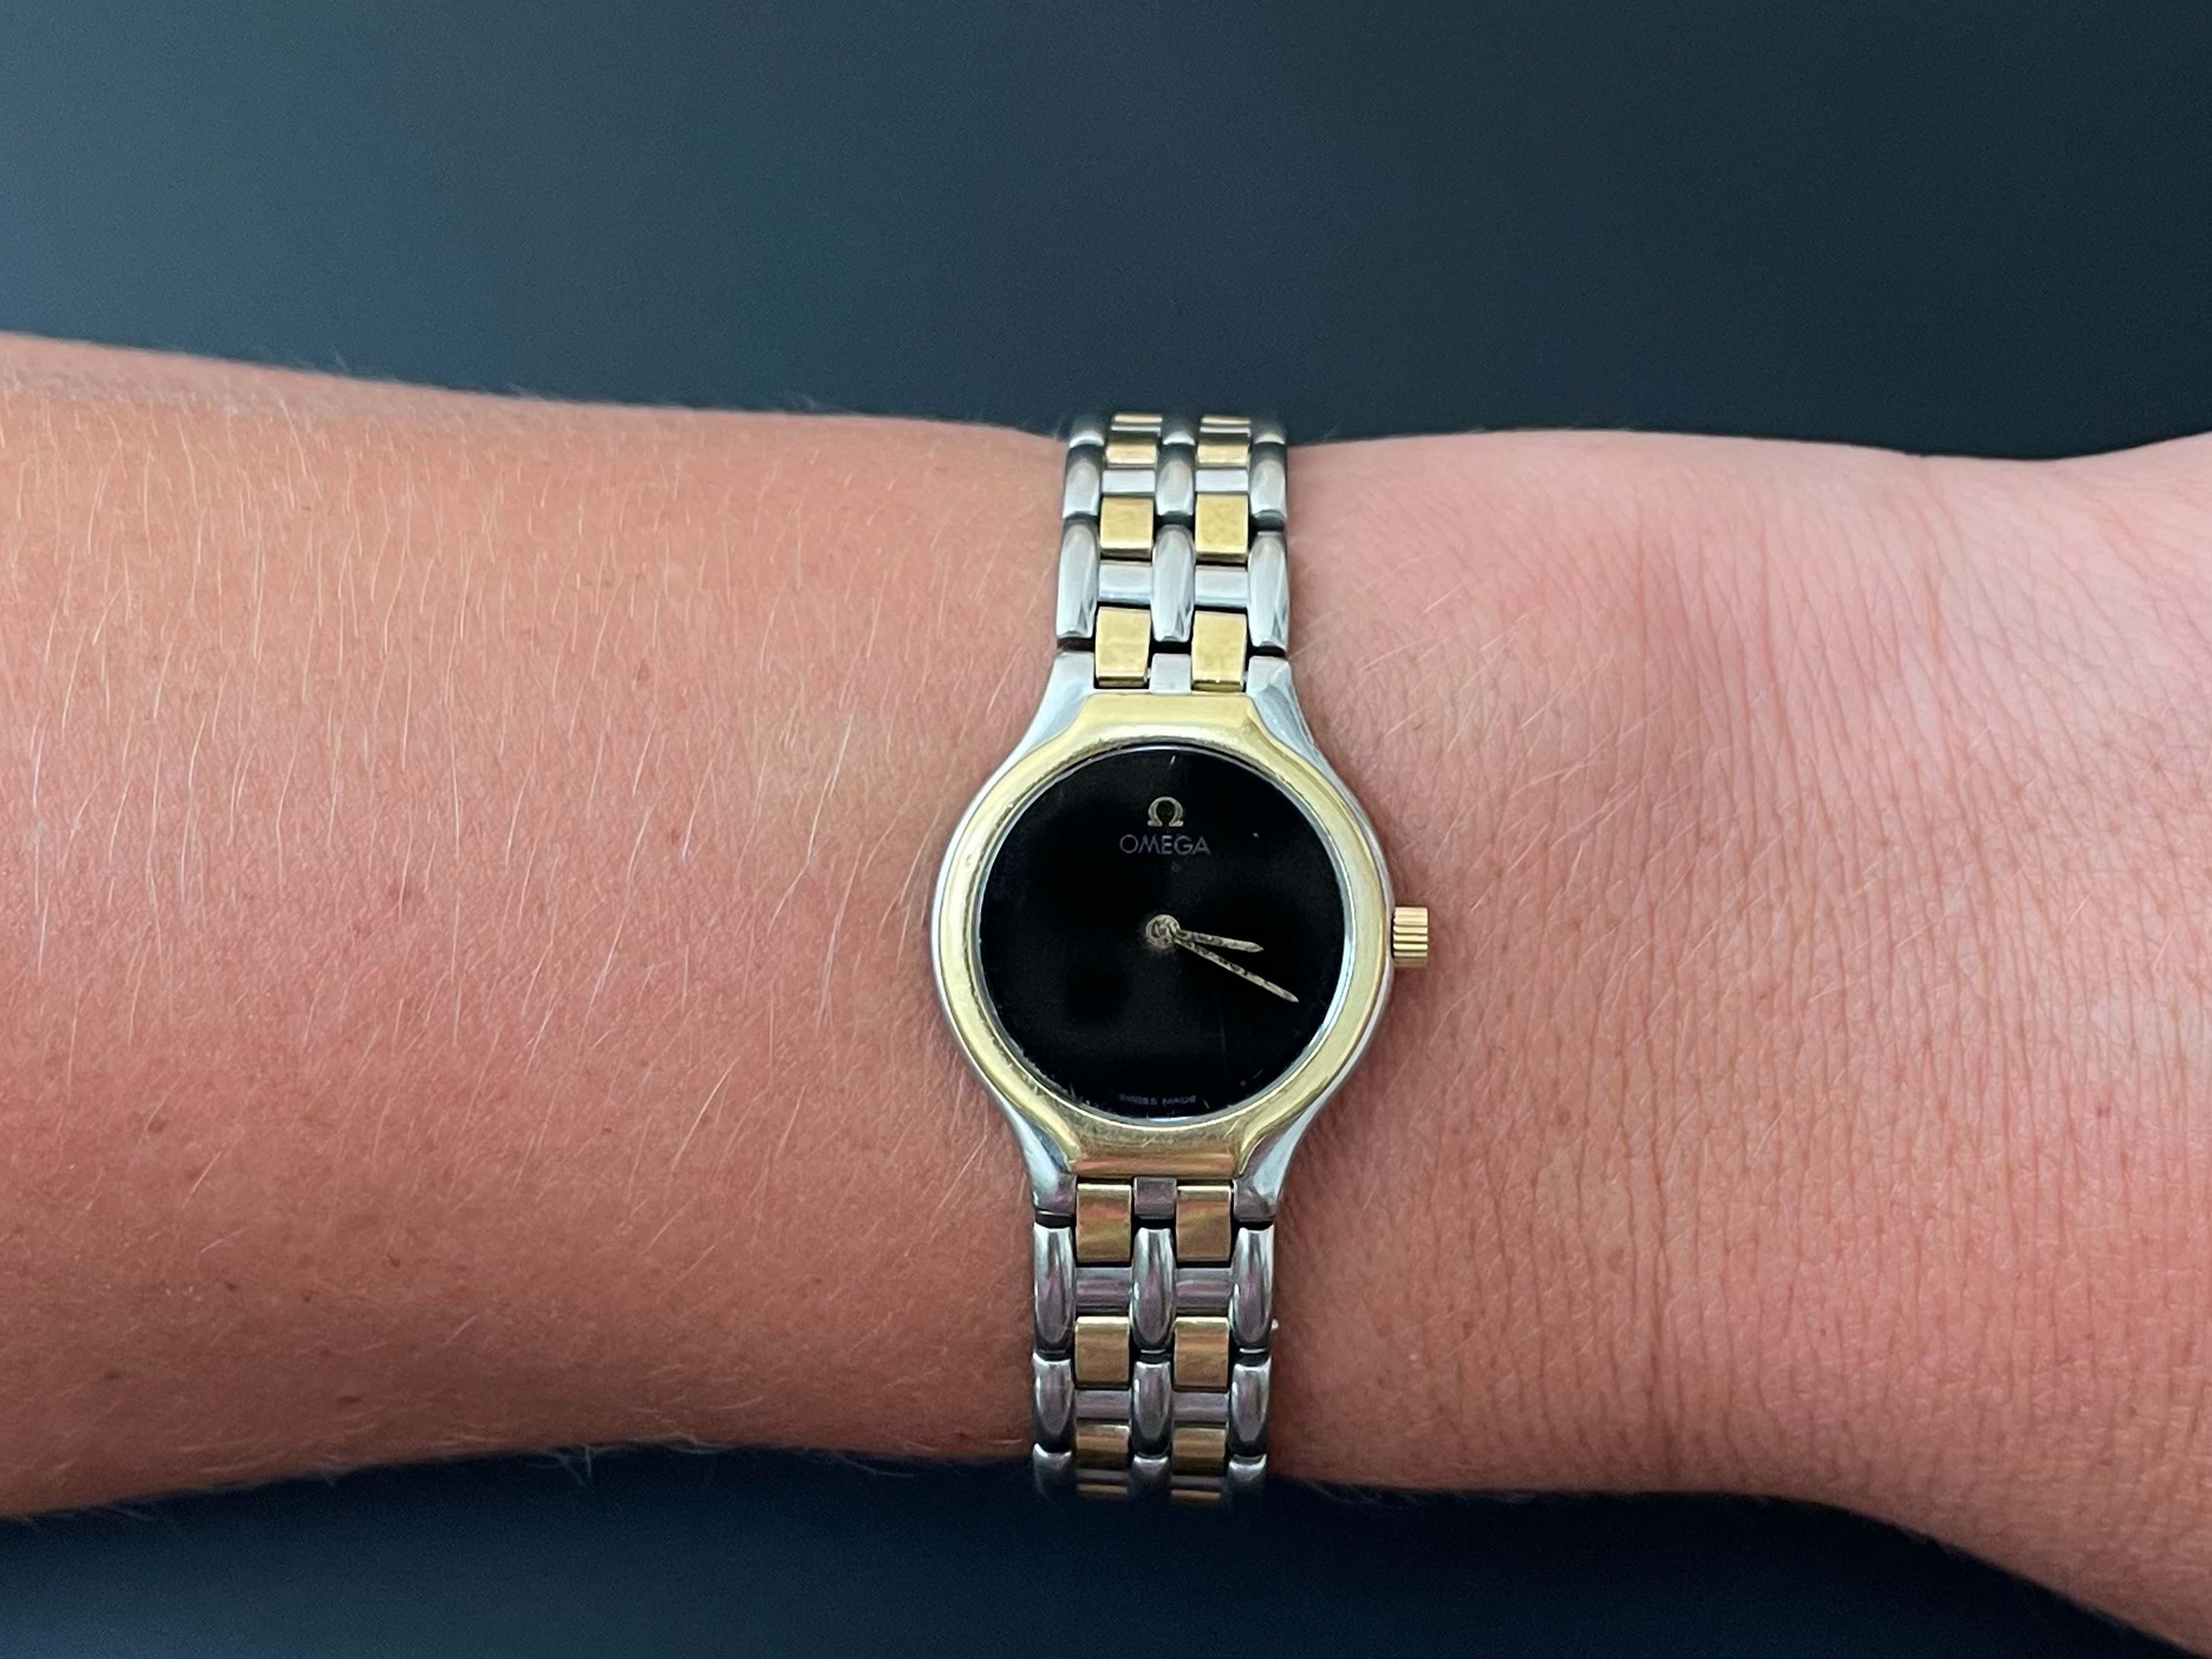 Omega 18K und Stahl Damen DeVille Uhr. Diese klassische Armbanduhr ist charismatisch und fesselnd. Sie hat ein rundes 23-mm-Gehäuse und ein schwarzes Quarzzifferblatt mit Stunden- und Minutenzeiger. Die Uhr hat eine Lünette und Krone aus 18 Karat